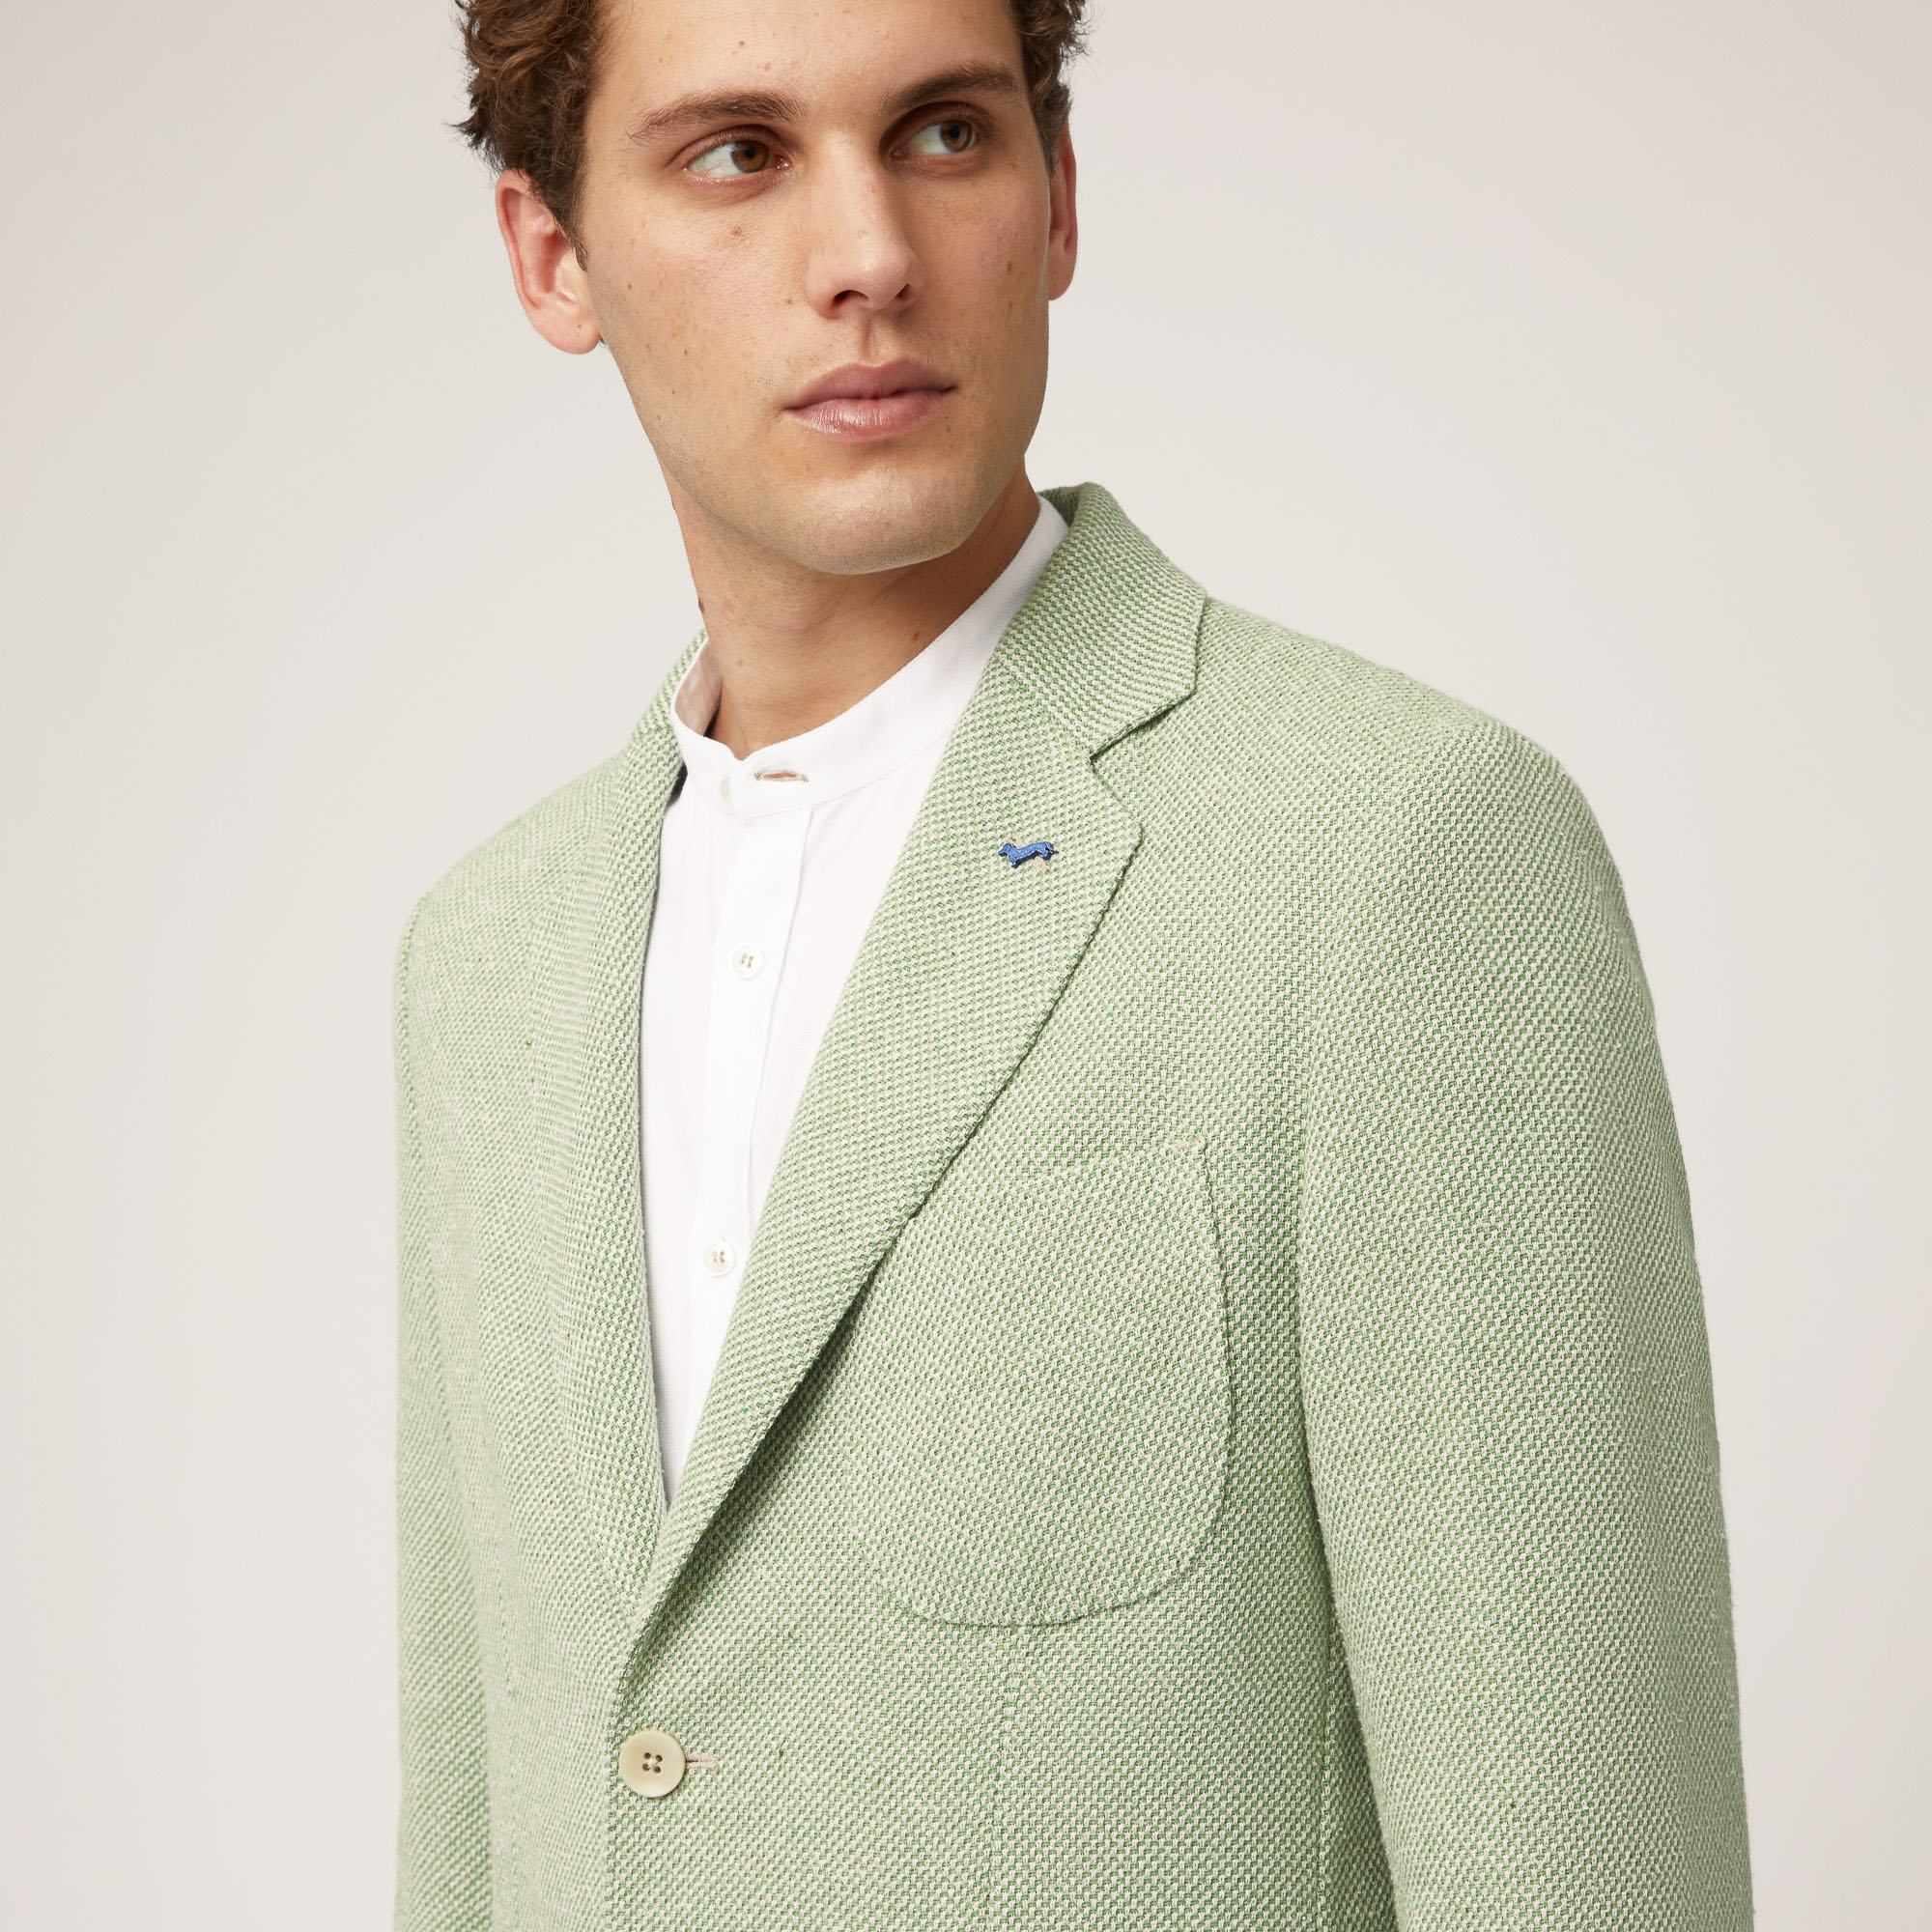 Jacke aus Baumwolle und Leinen mit Taschen und Brusttasche, Grasgrün, large image number 2